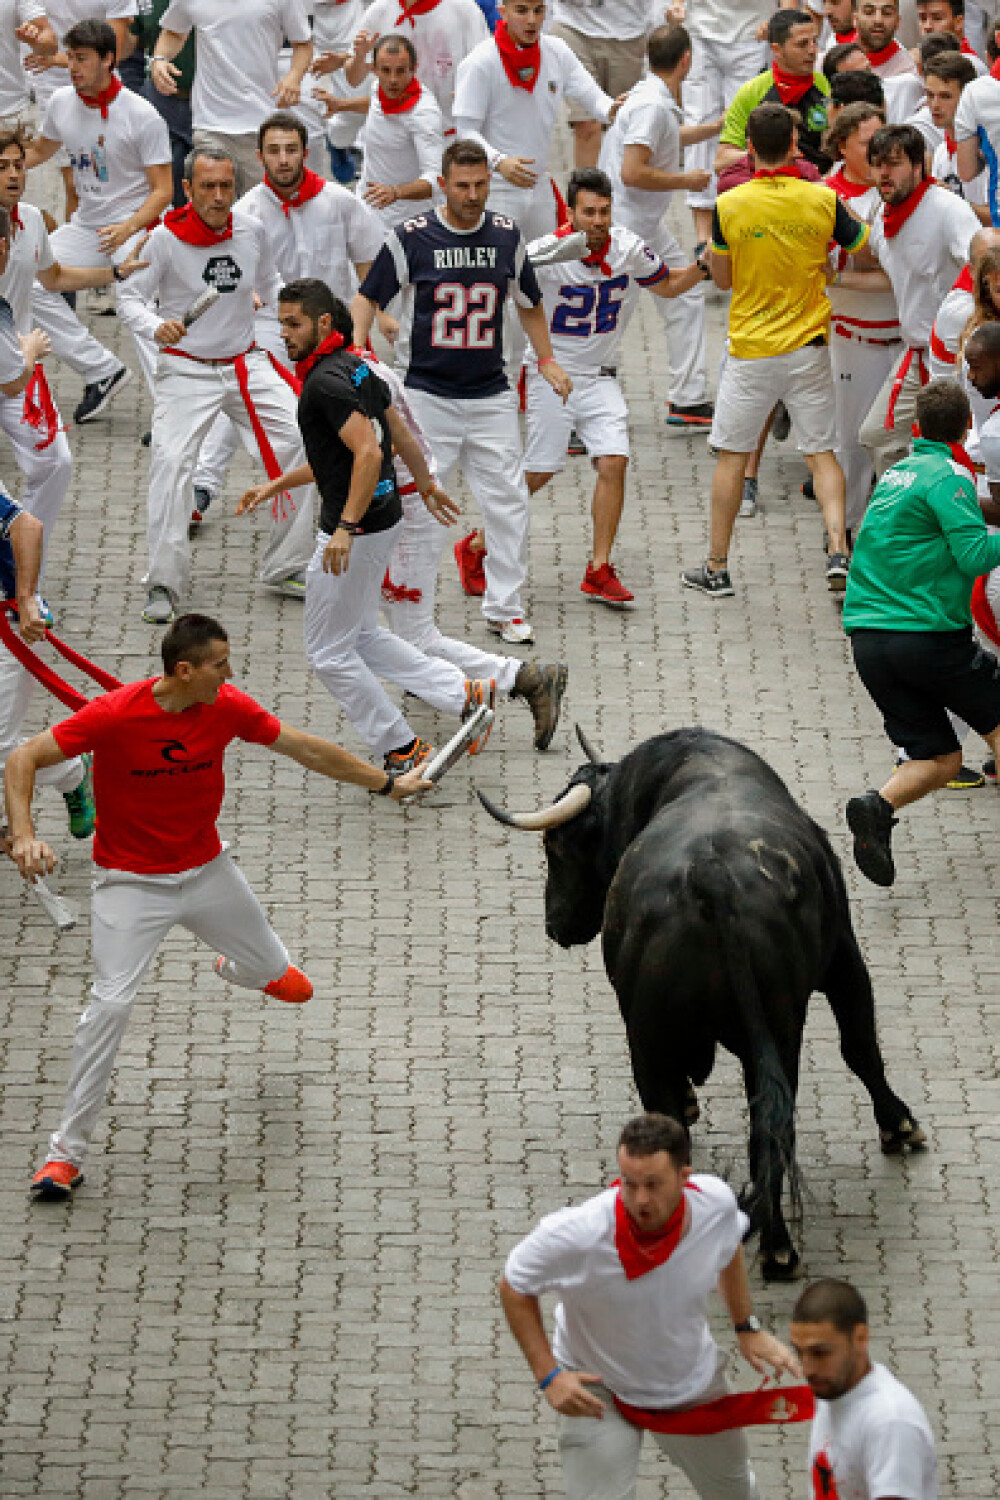 Imagini șocante. Turiști călcați în picioare și împunși de tauri la Pamplona - Imaginea 15